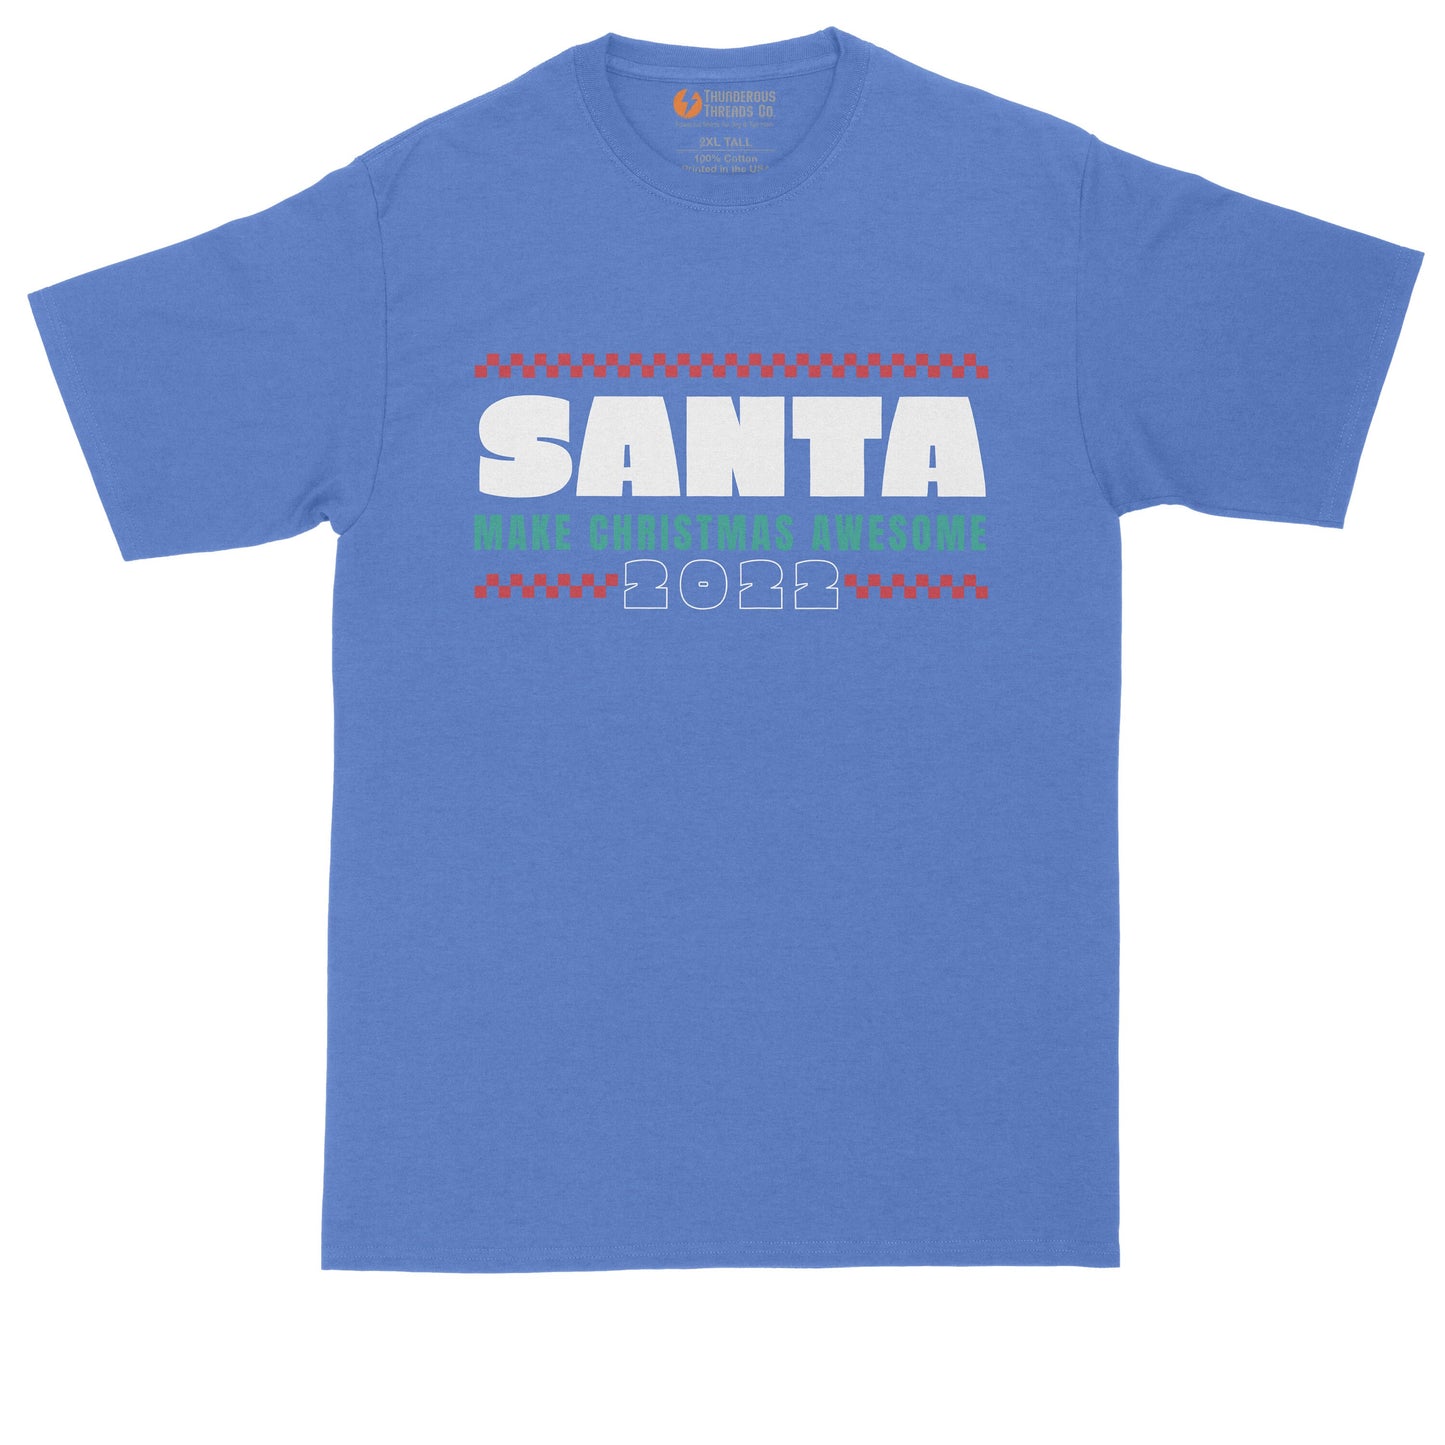 Santa Make Christmas Awesome | Ugly Christmas Sweater | Funny Christmas Shirt | Mens Big & Tall T-Shirt